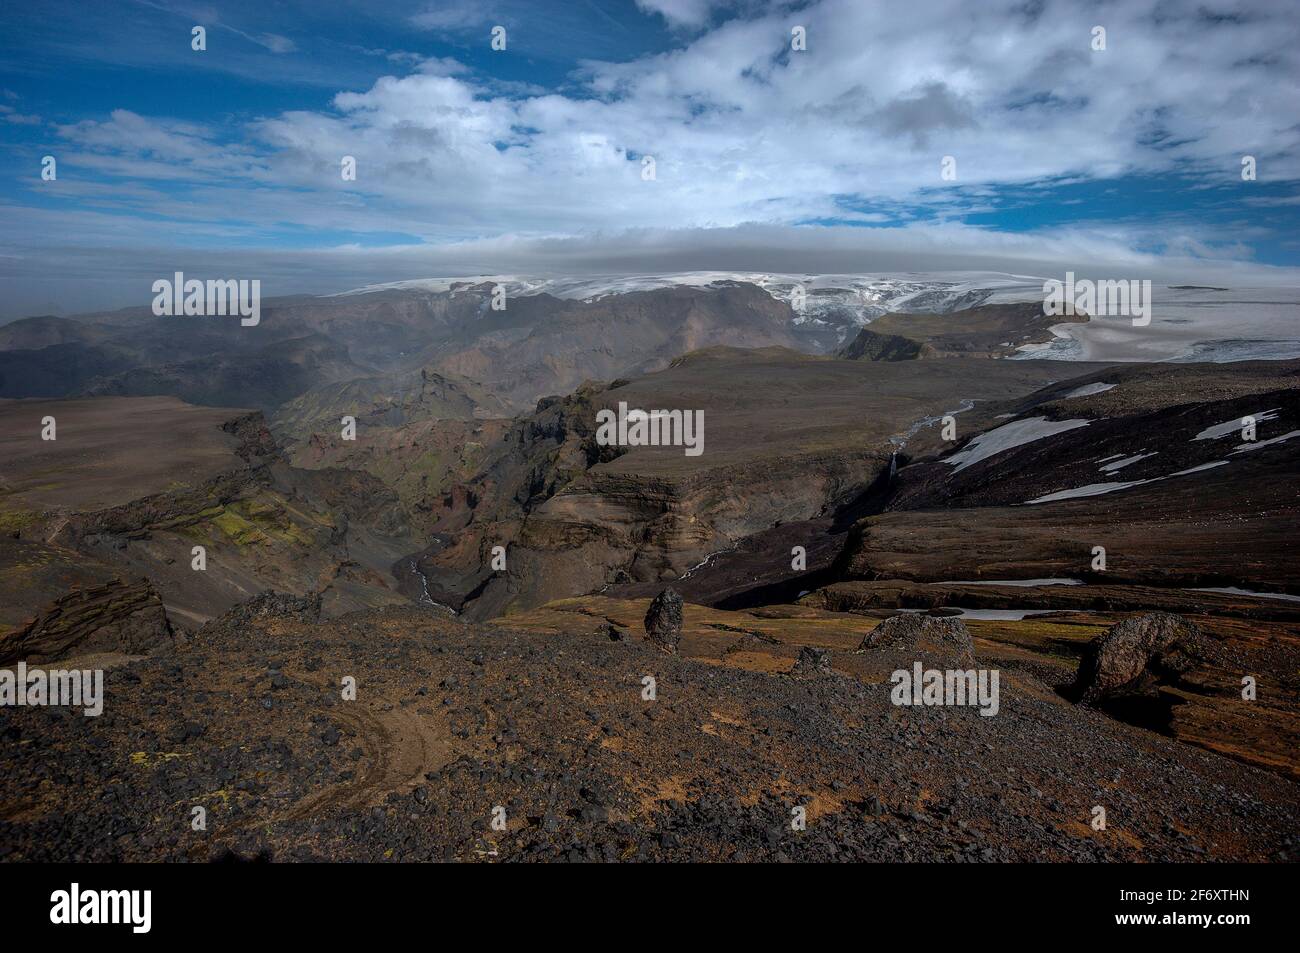 Dramatic landscape along the Landmanalaugar to Thorsmork hiking trail, South Iceland, Iceland Stock Photo